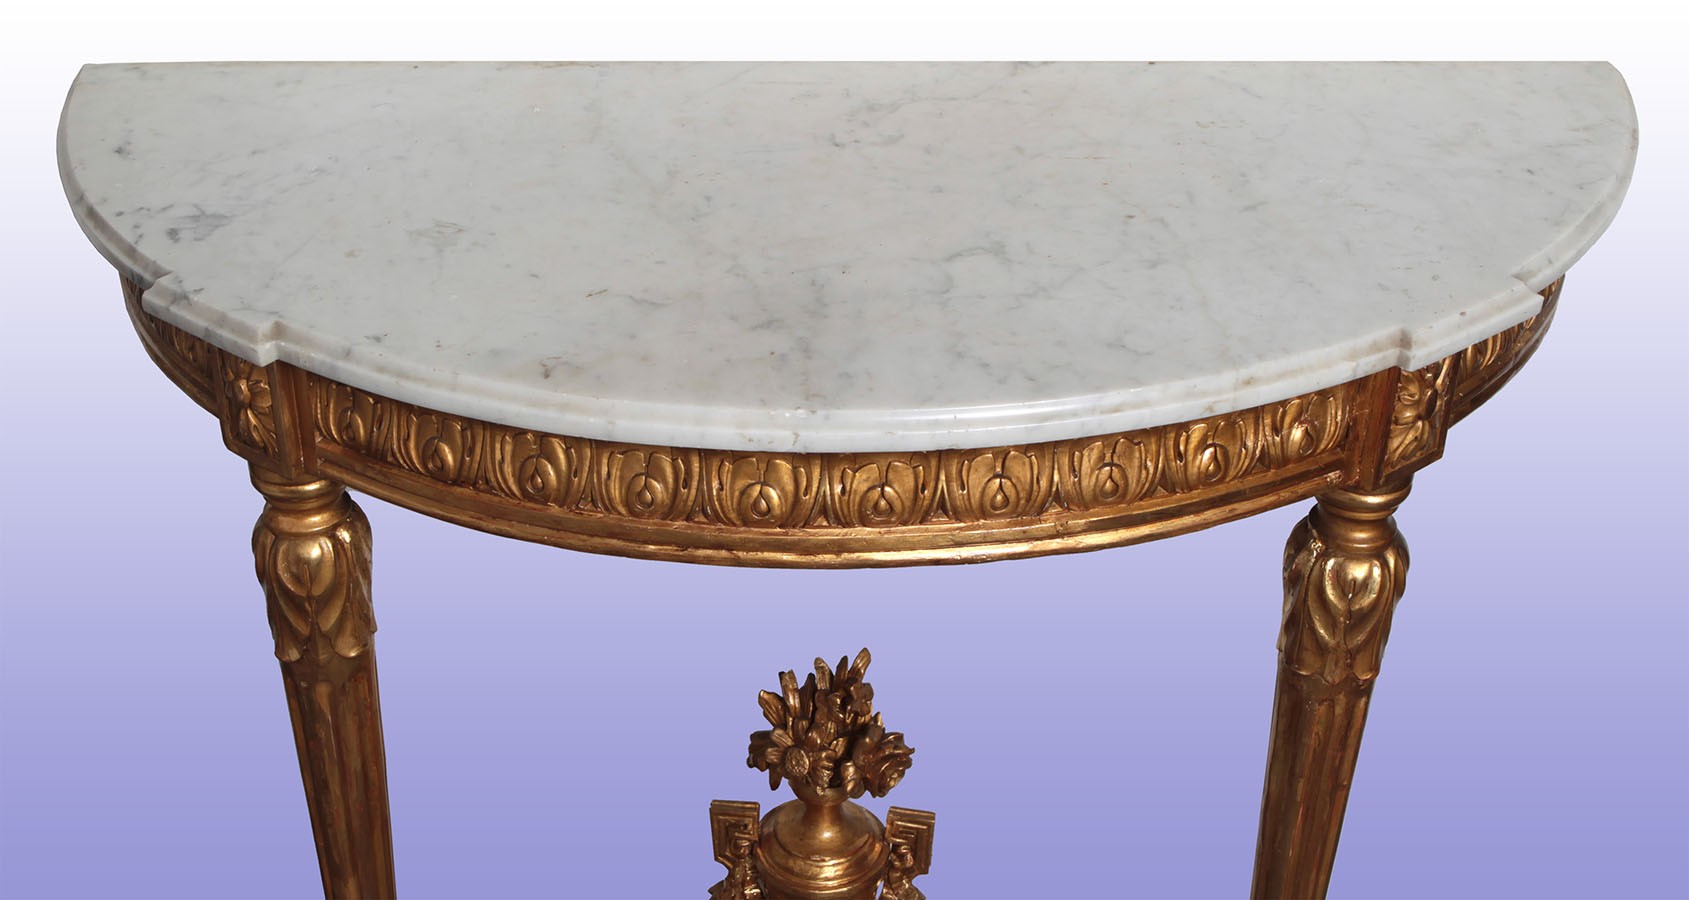 Antica consolle francese del 1800 a mezzaluna in legno dorato e marmo